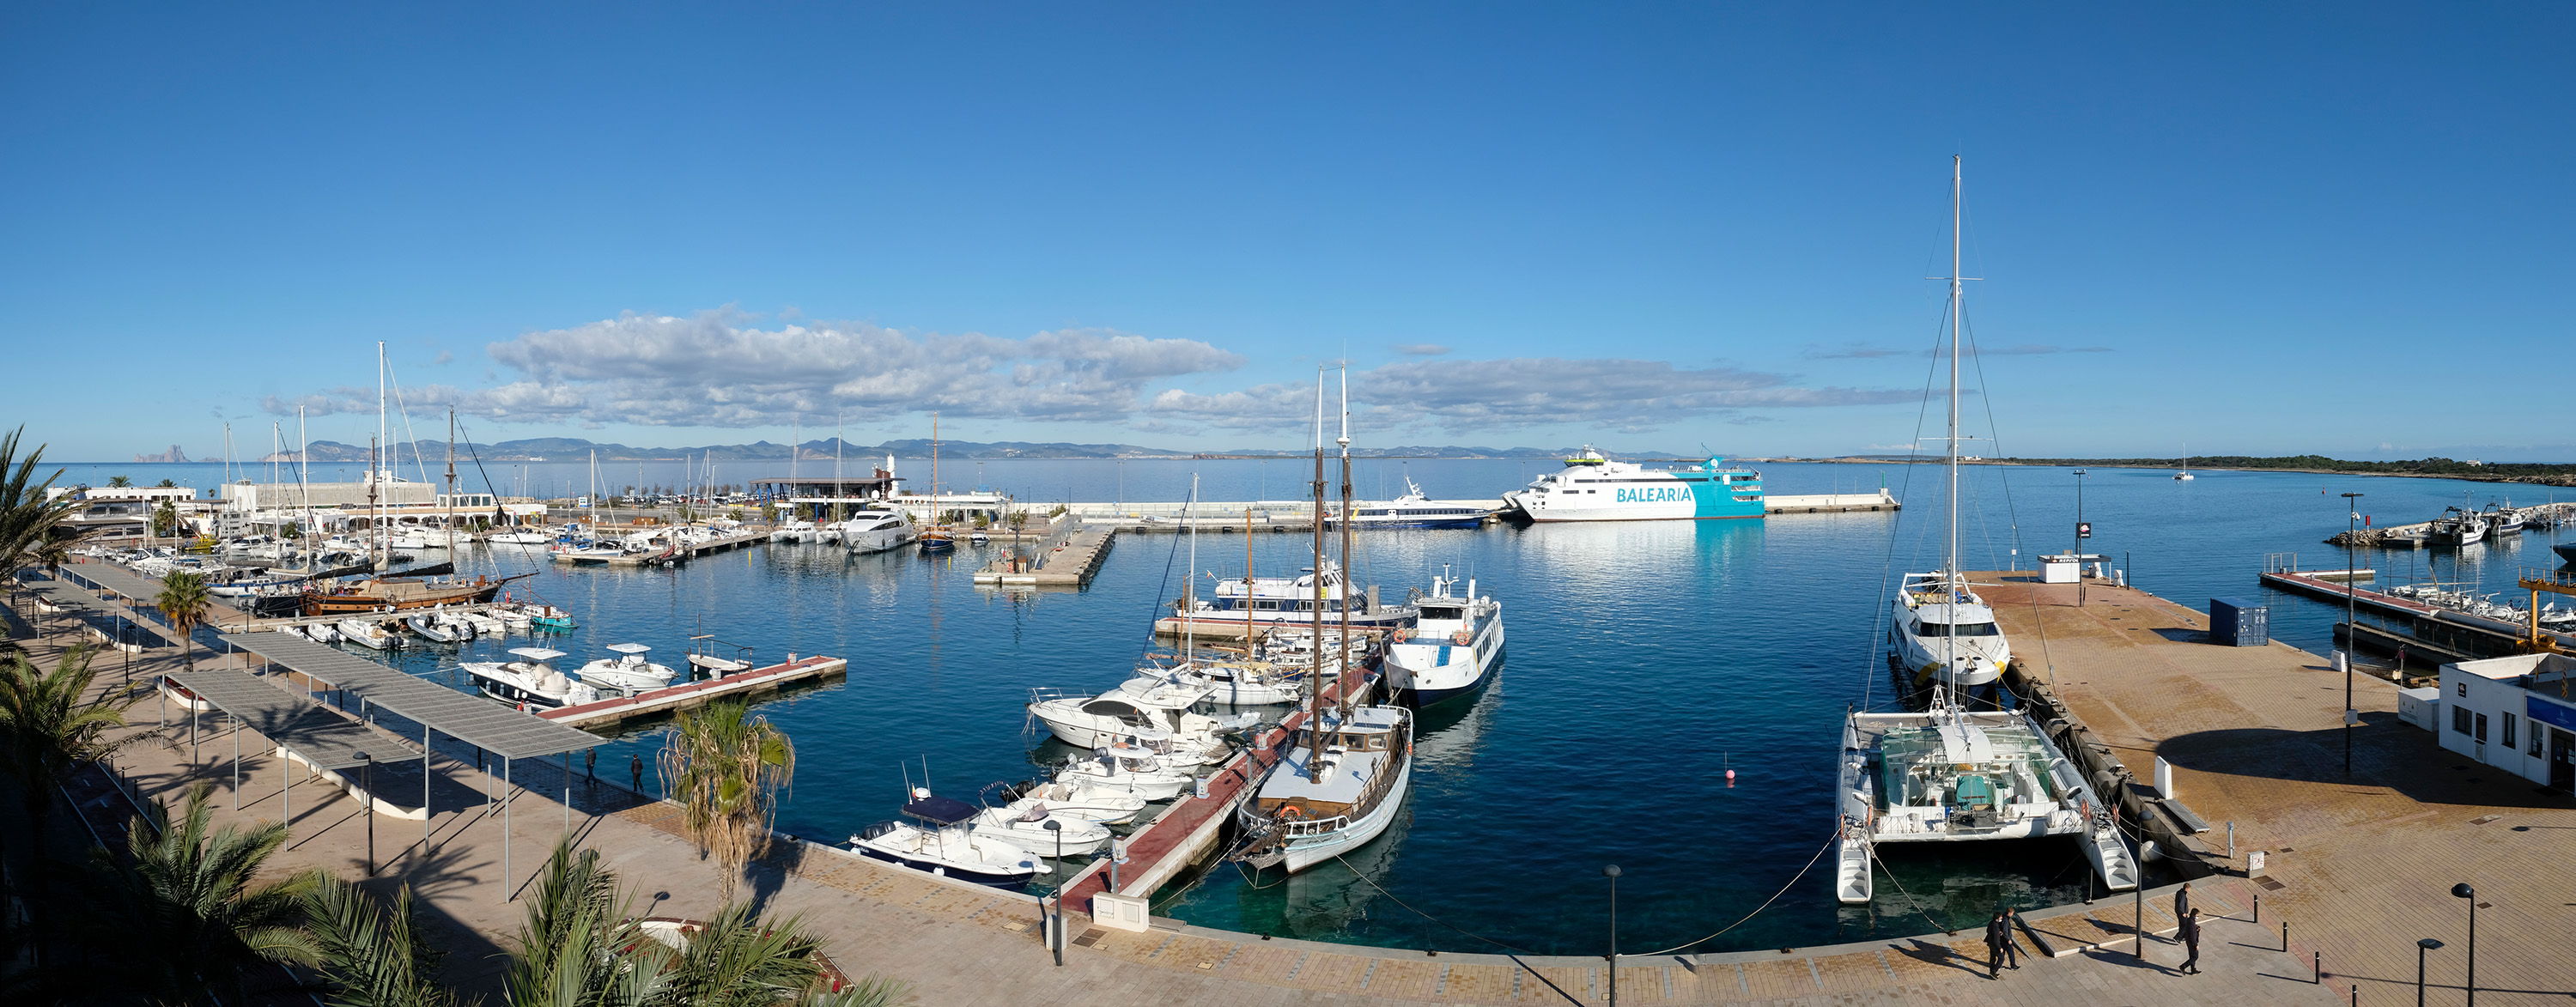 La APB ocupará la subdársena de Levante del puerto de la Savina y la destinará a la operativa de las barcas de excursiones